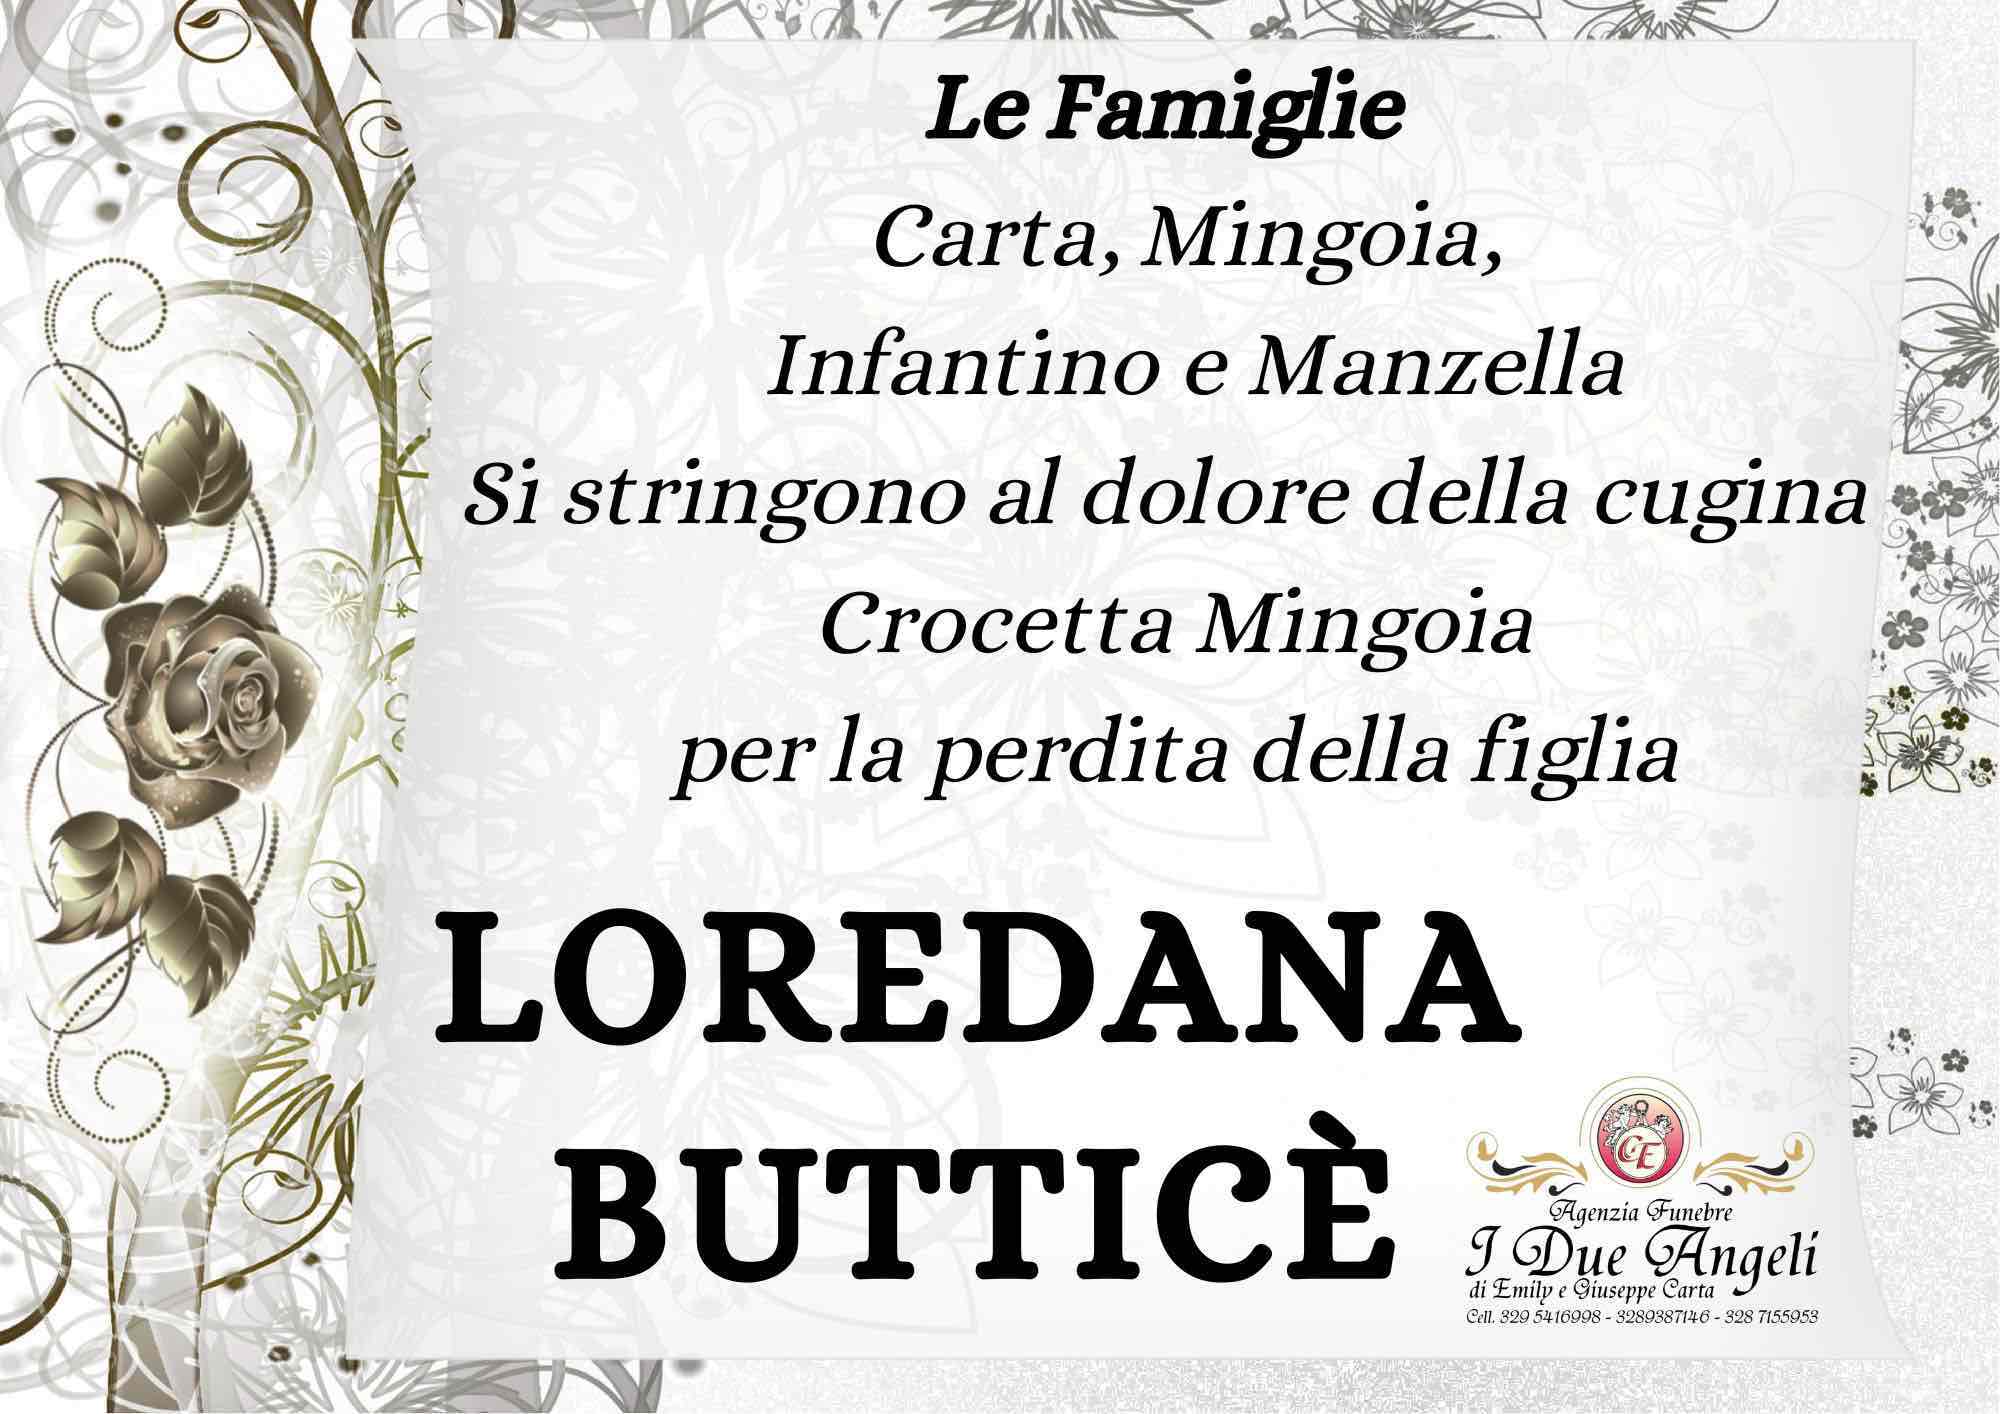 Loredana Butticè